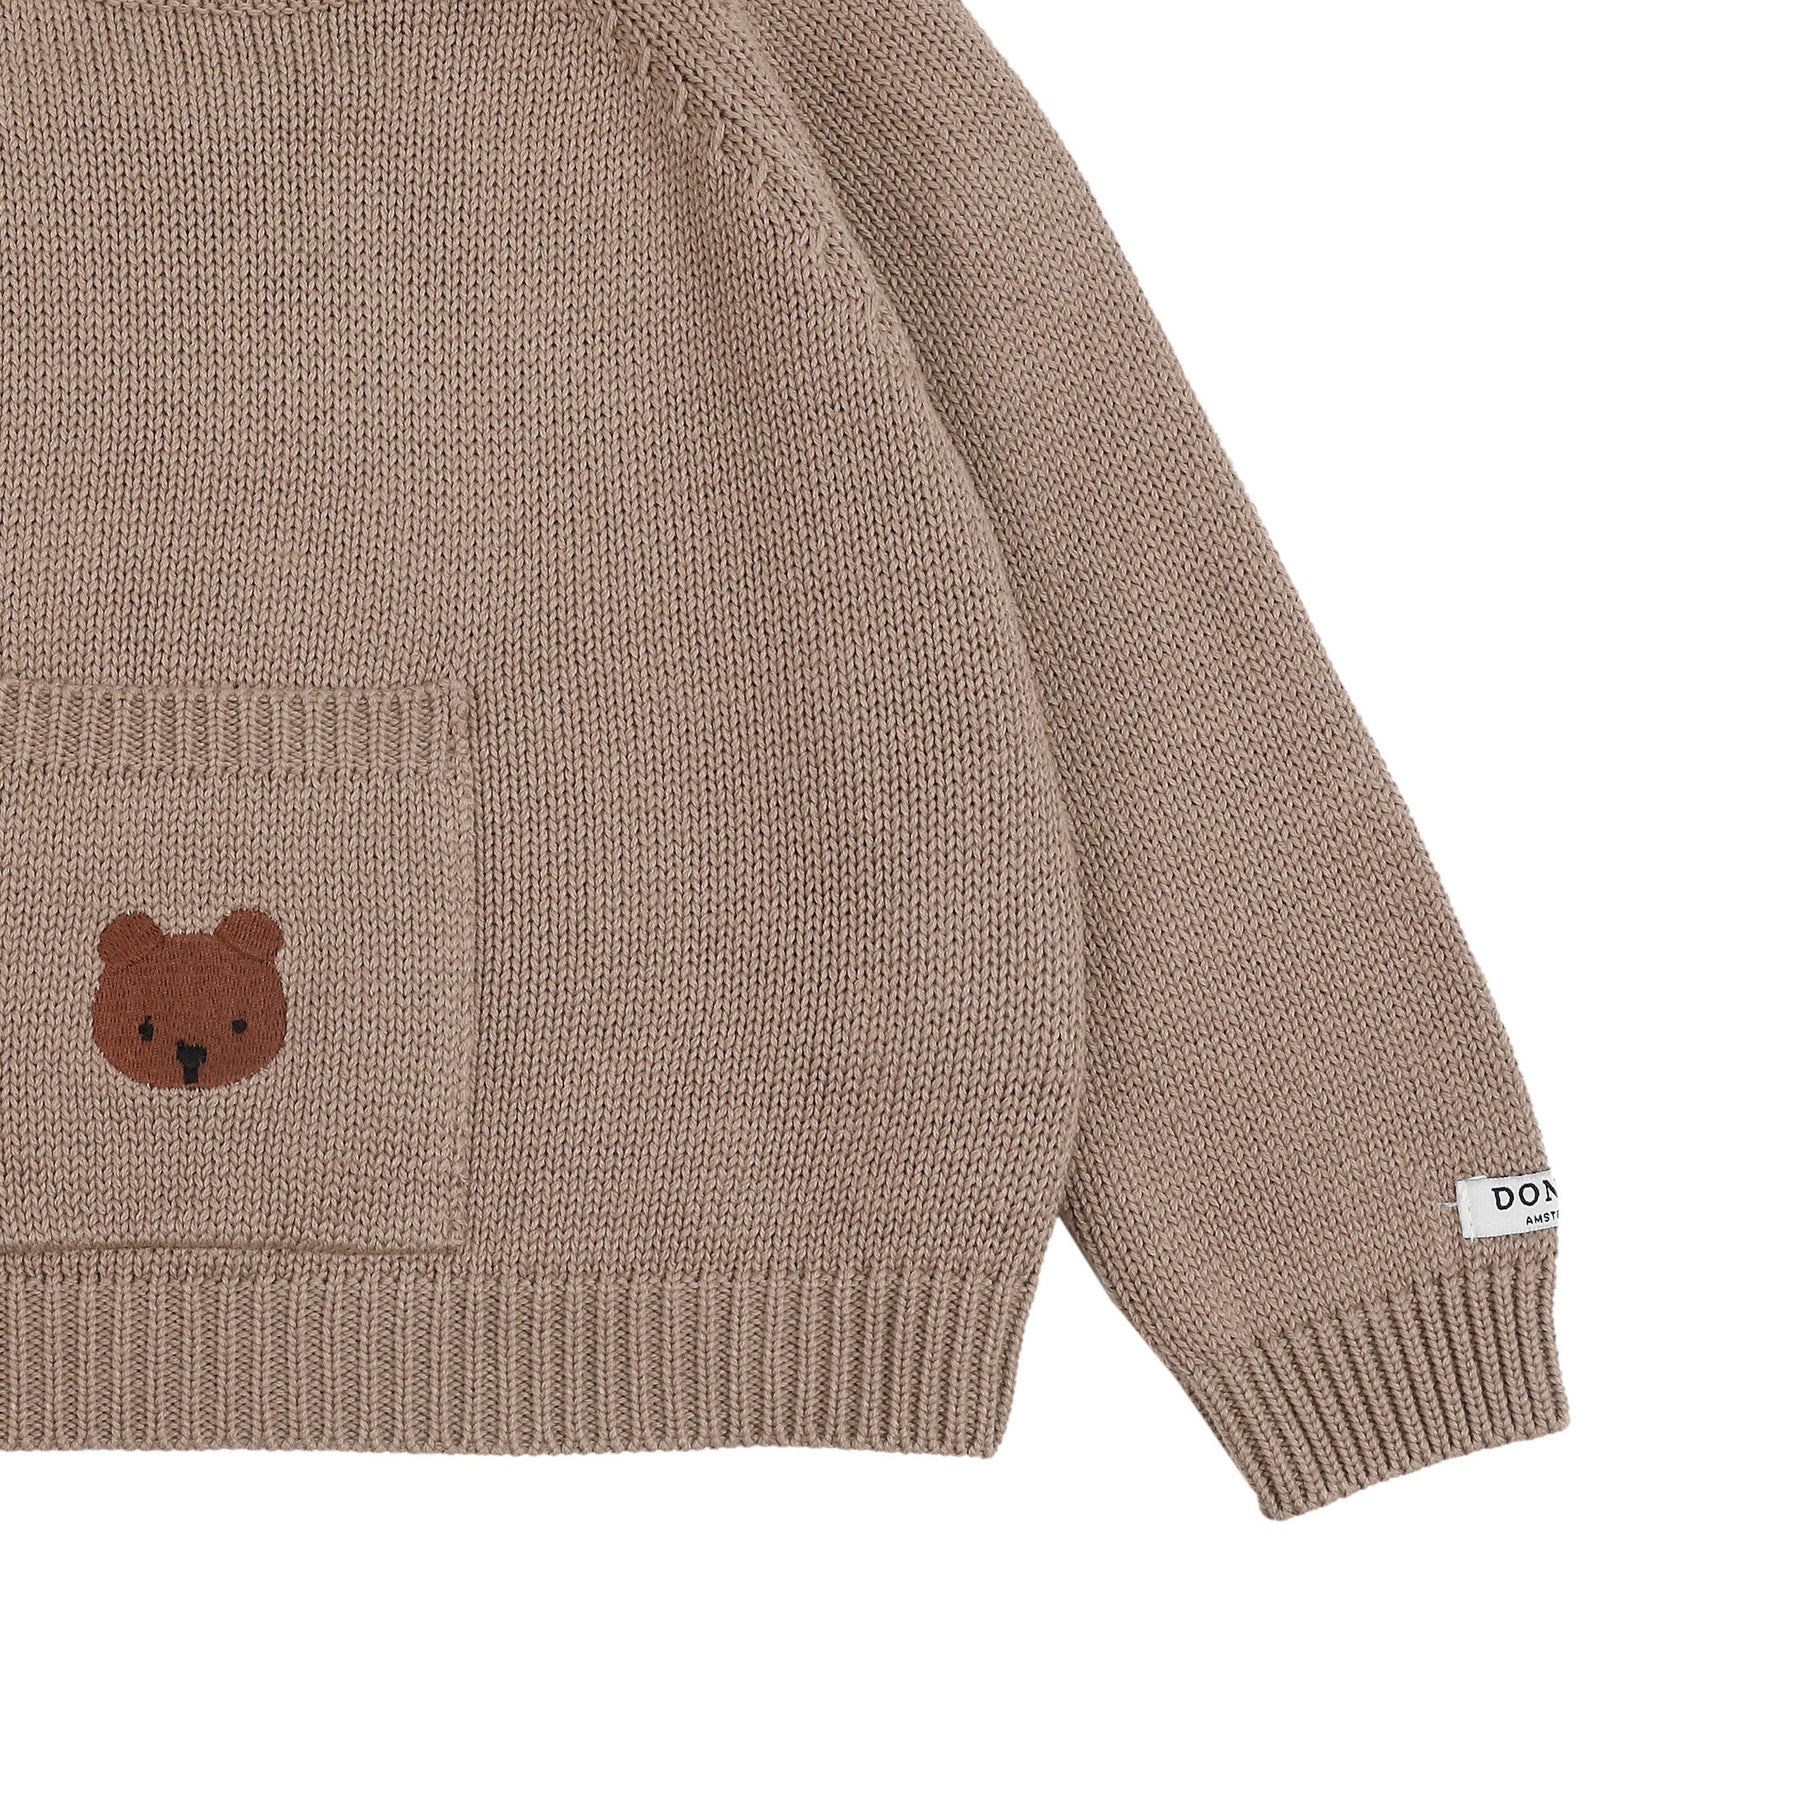 Loeke Sweater | Bear Hazelnut